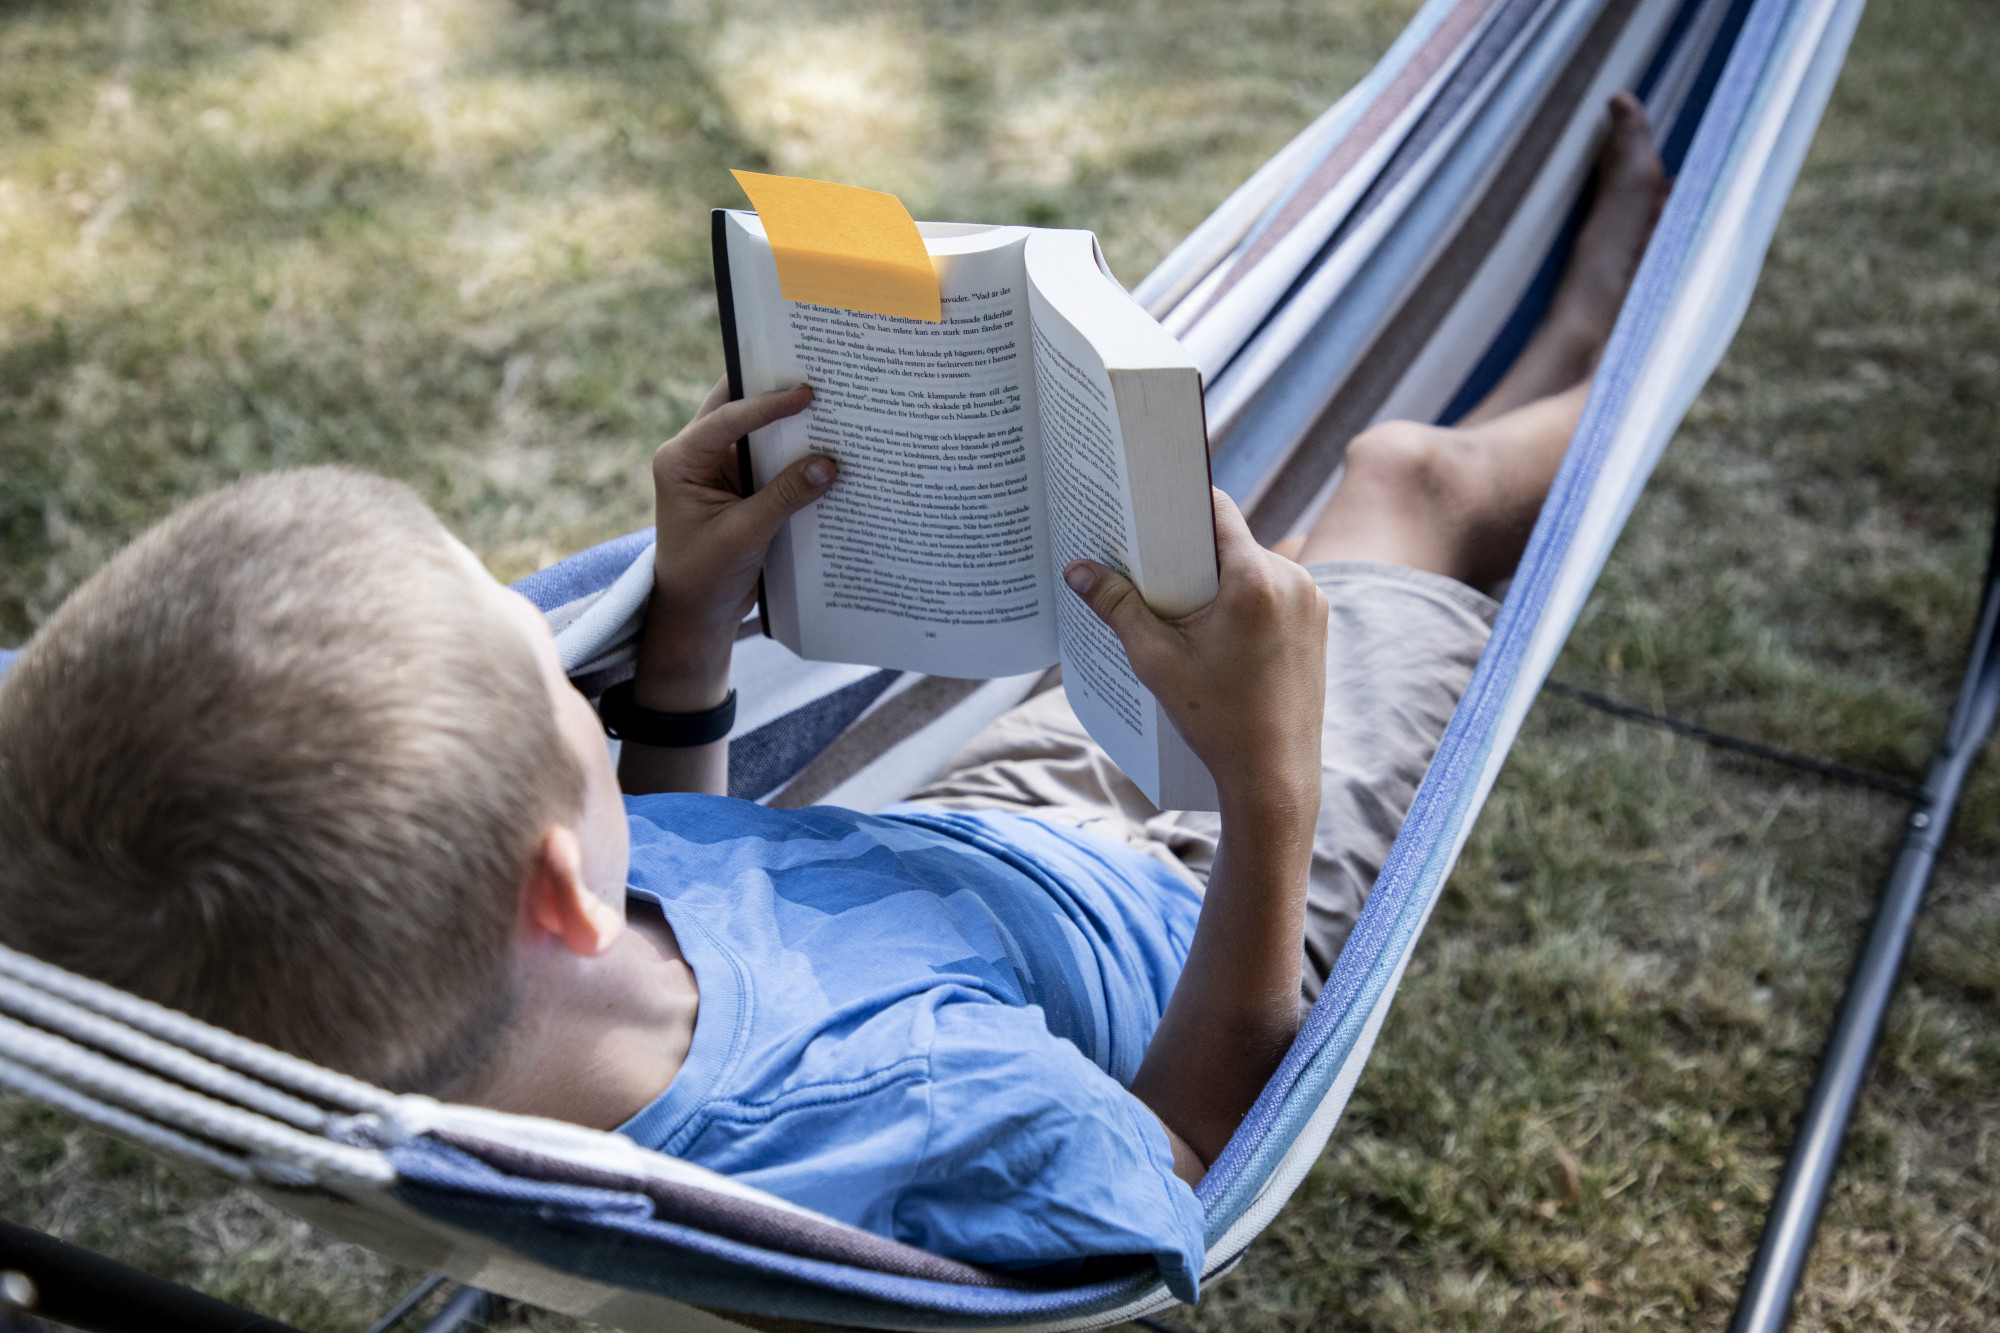 Azok, akik korán elkezdenek kedvtelésből olvasni, később eredményesebbek és egészségesebbek lesznek